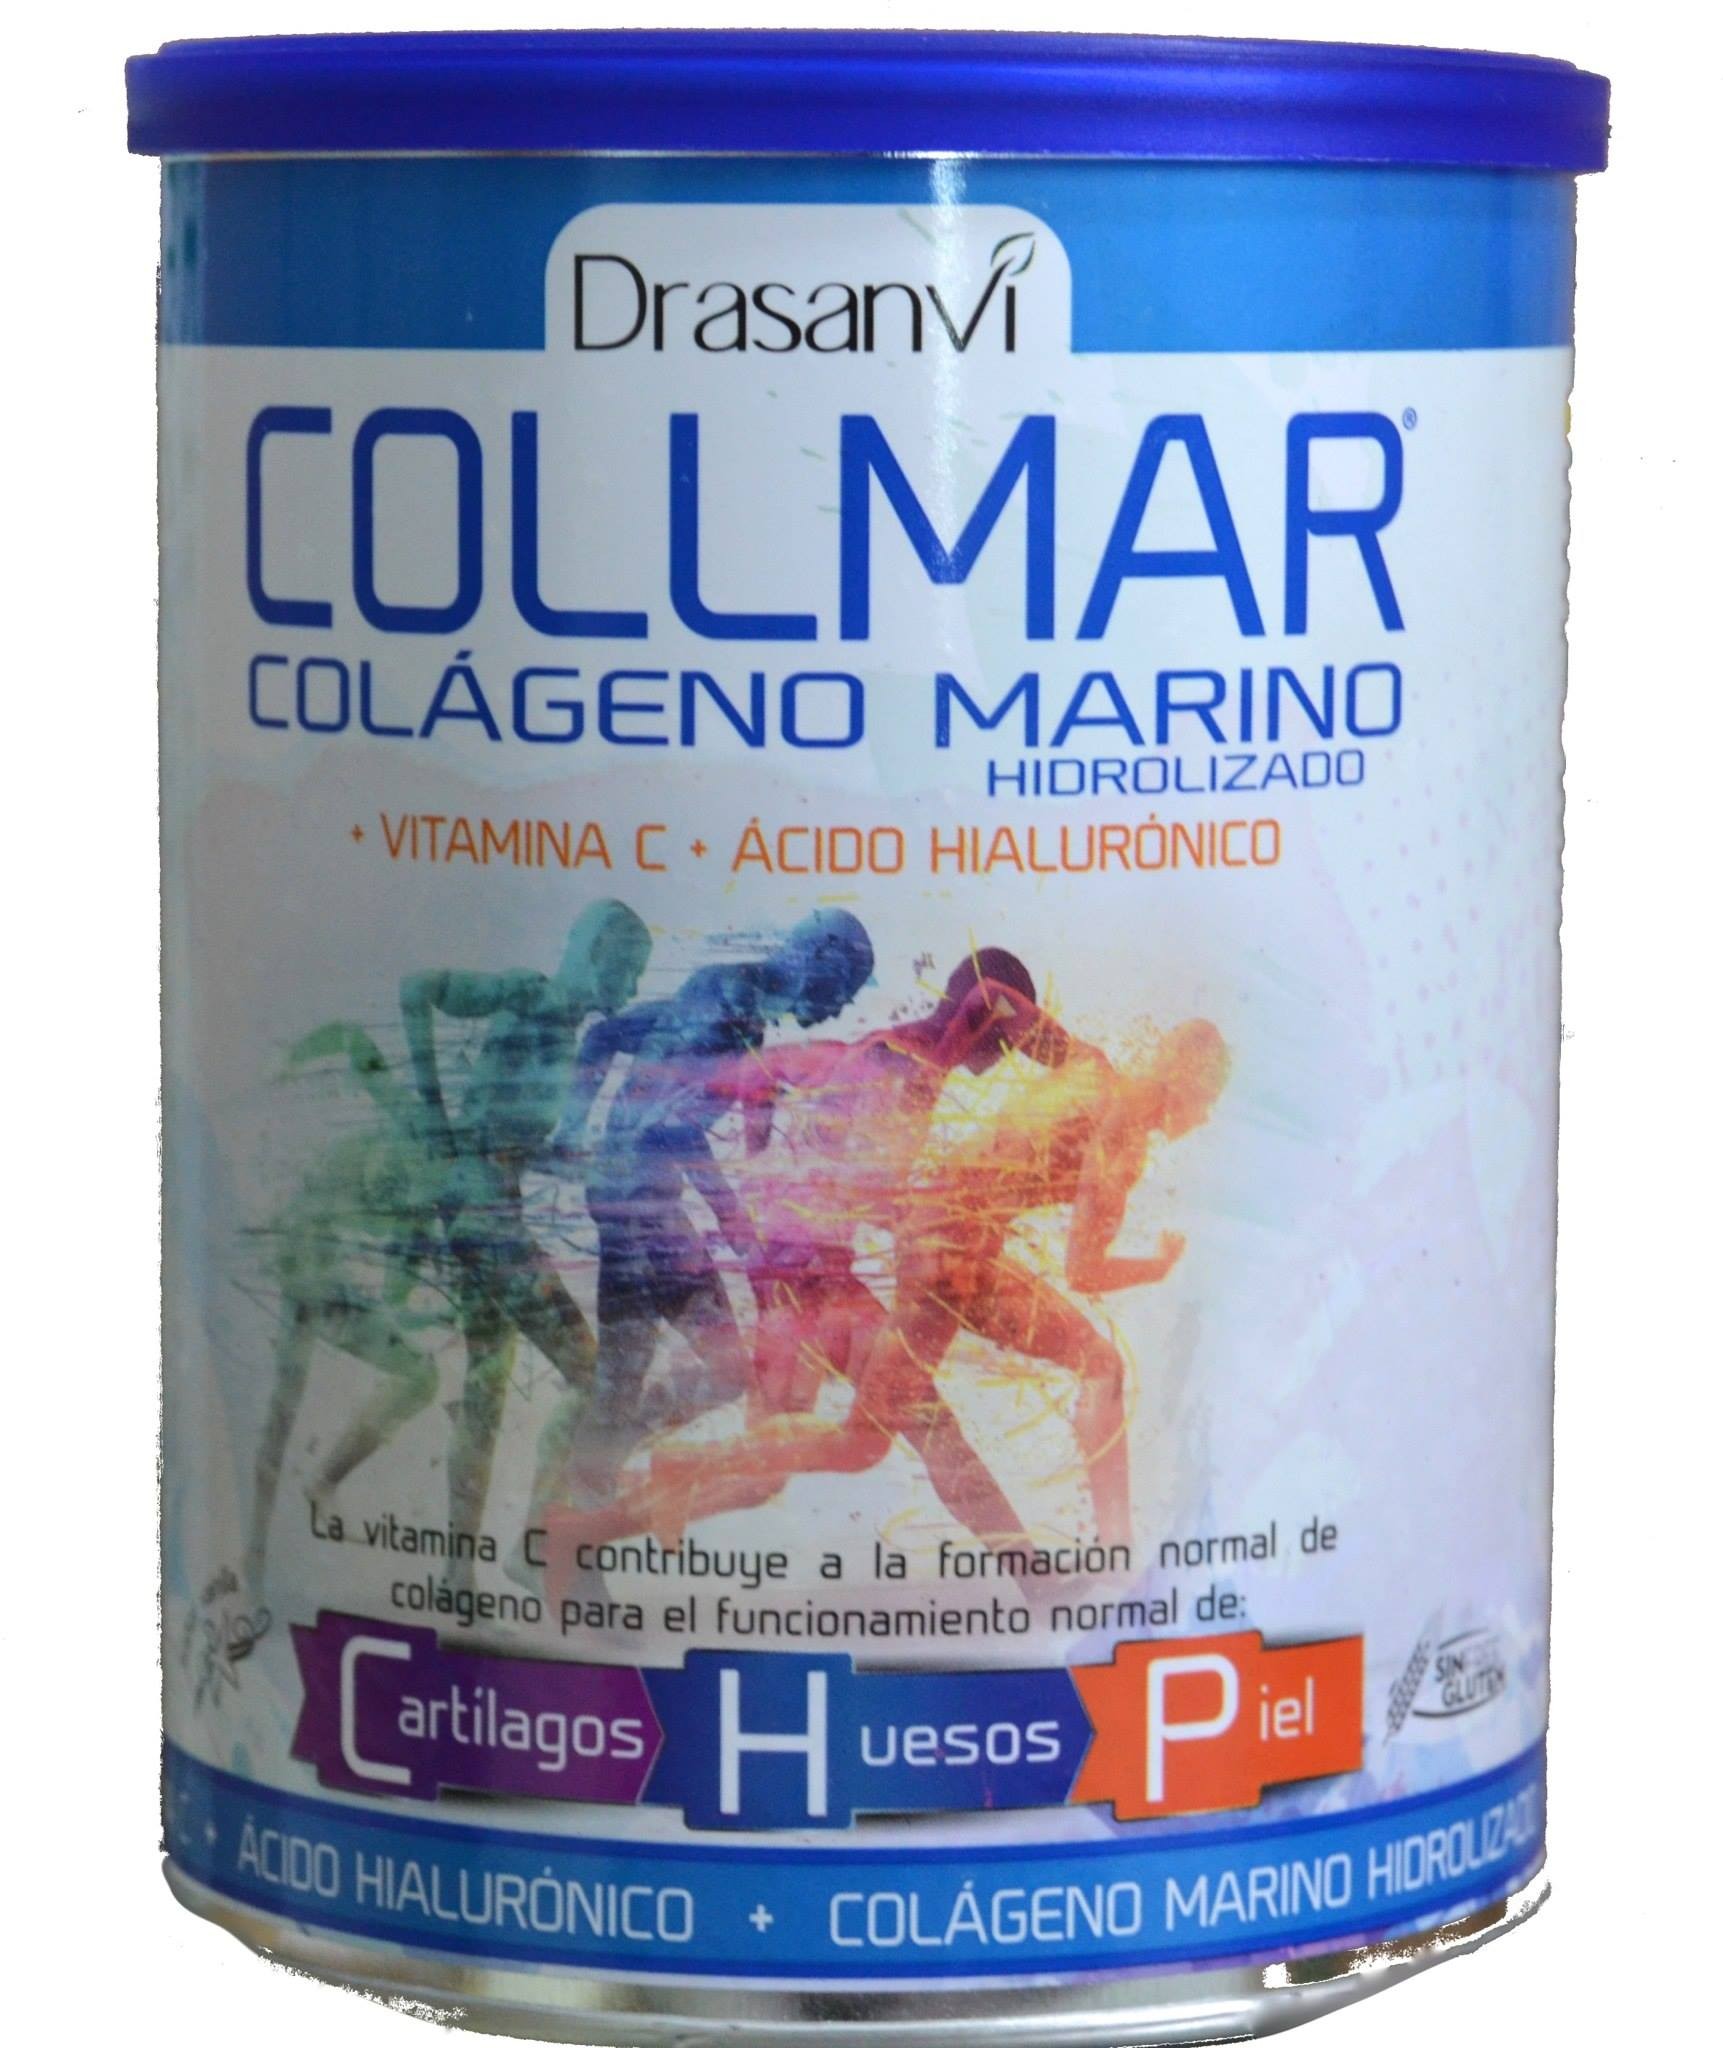 Comprar Collmar Colágeno Marino Gran Farmacia Andorra Con Magnesio El colágeno es una de las proteínas que podemos encontrar en los tejidos del cuerpo humano